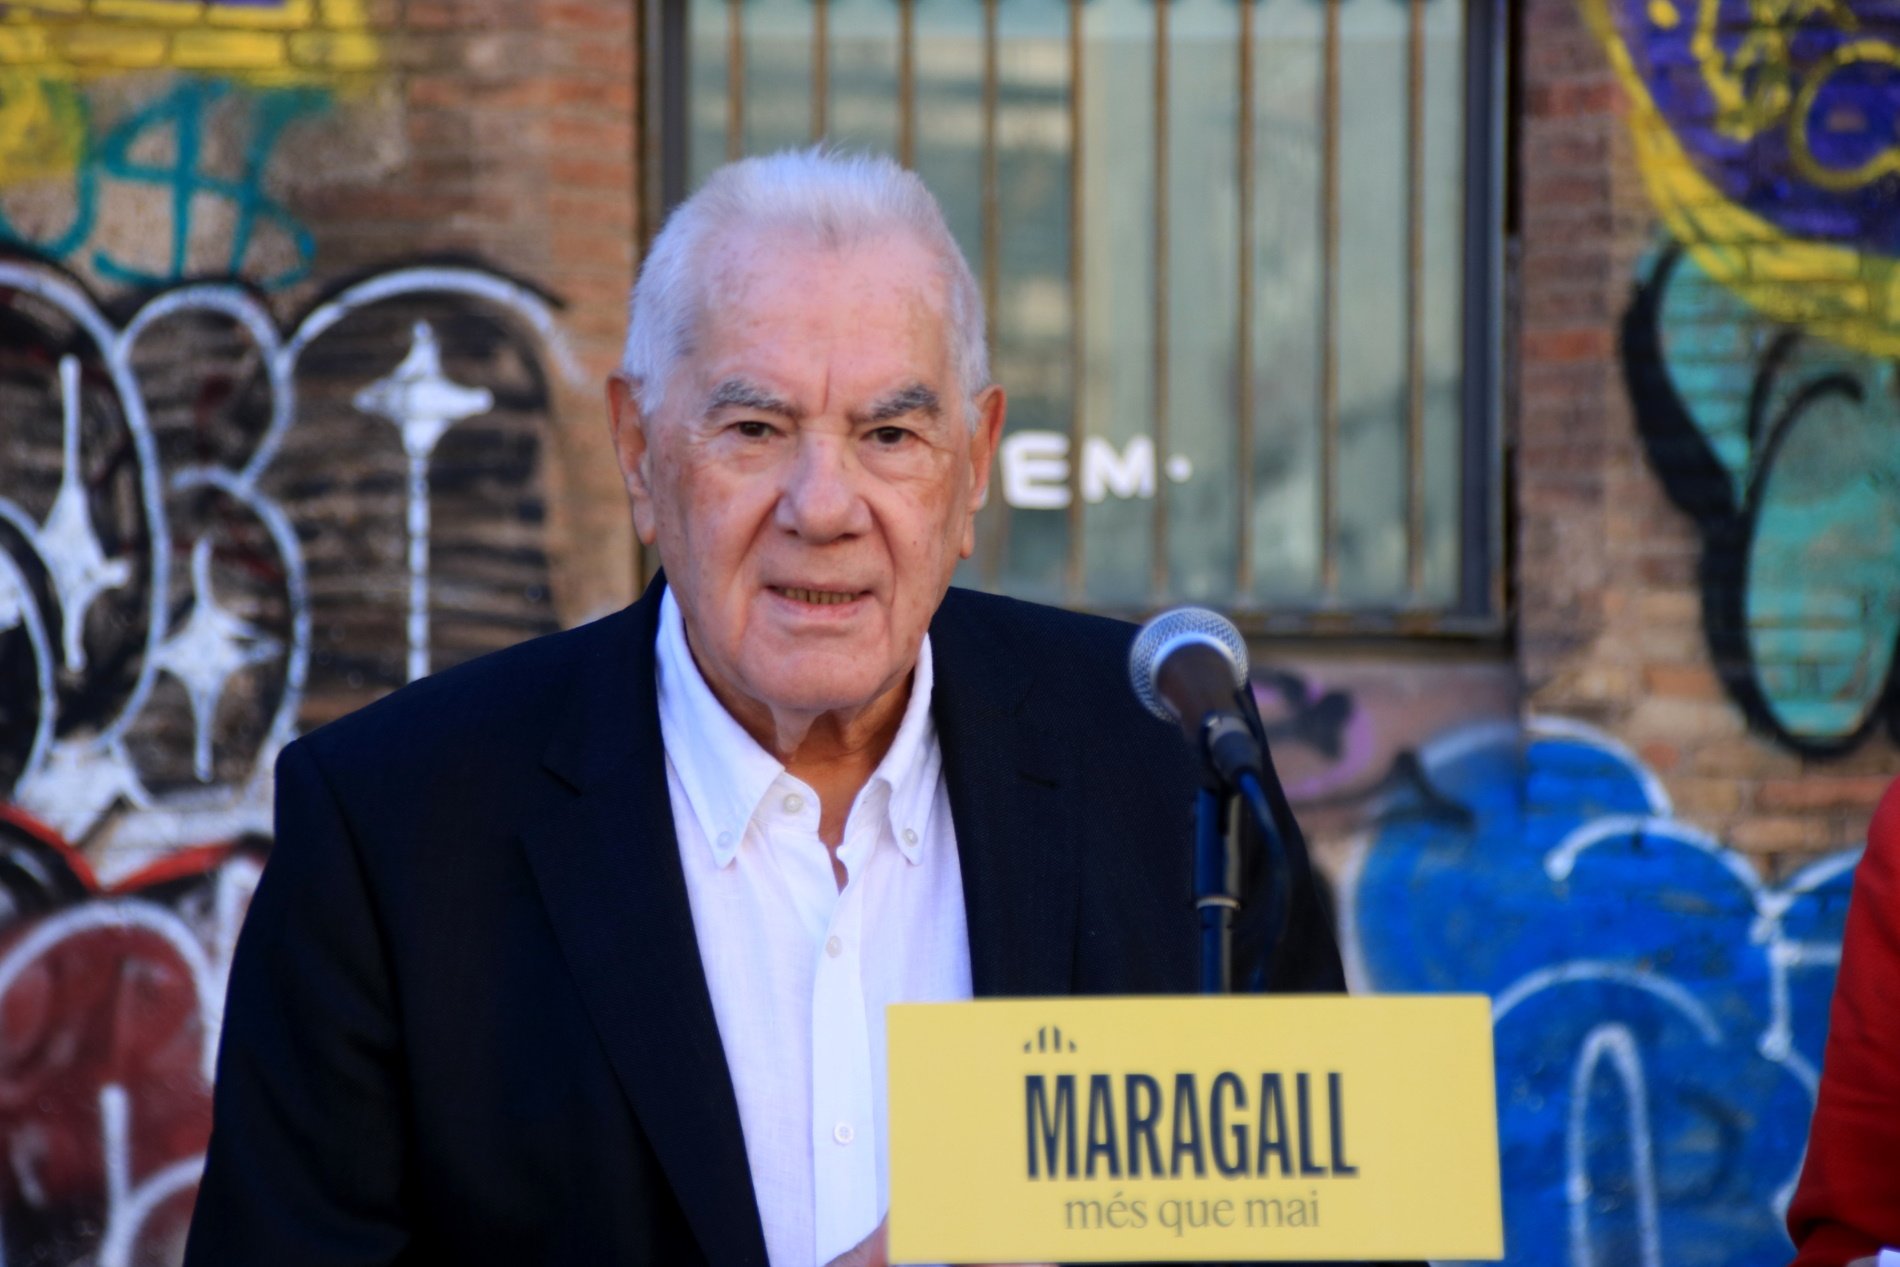 Maragall promete un equipo de 100 trabajadores para limpiar los puntos más degradados de Barcelona en 100 días